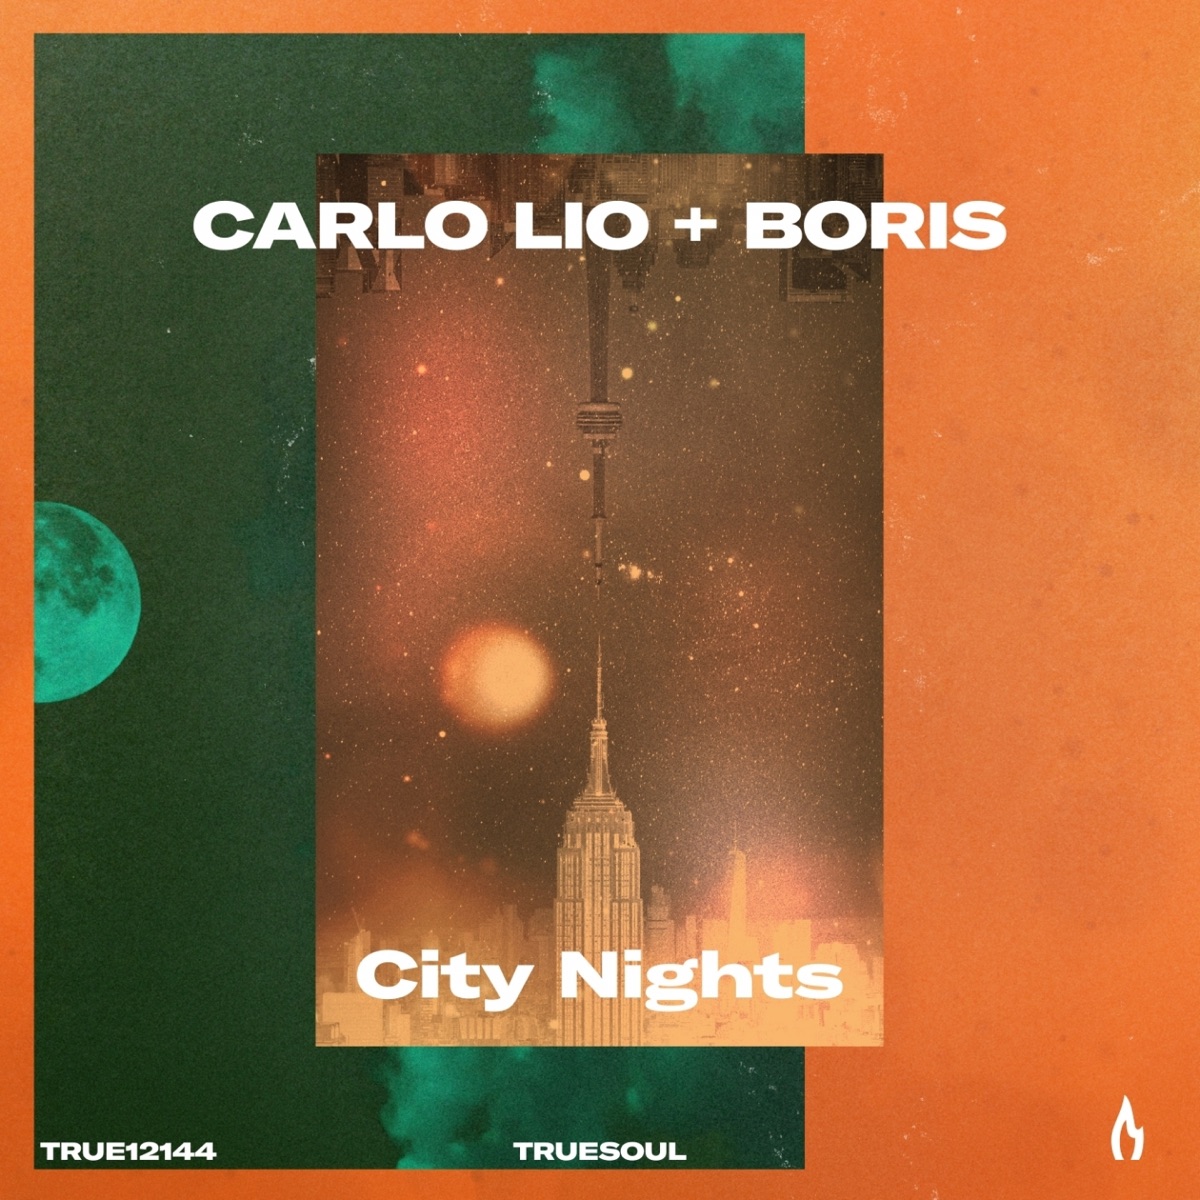 Carlo Lio & DJ Boris - City Nights - Single